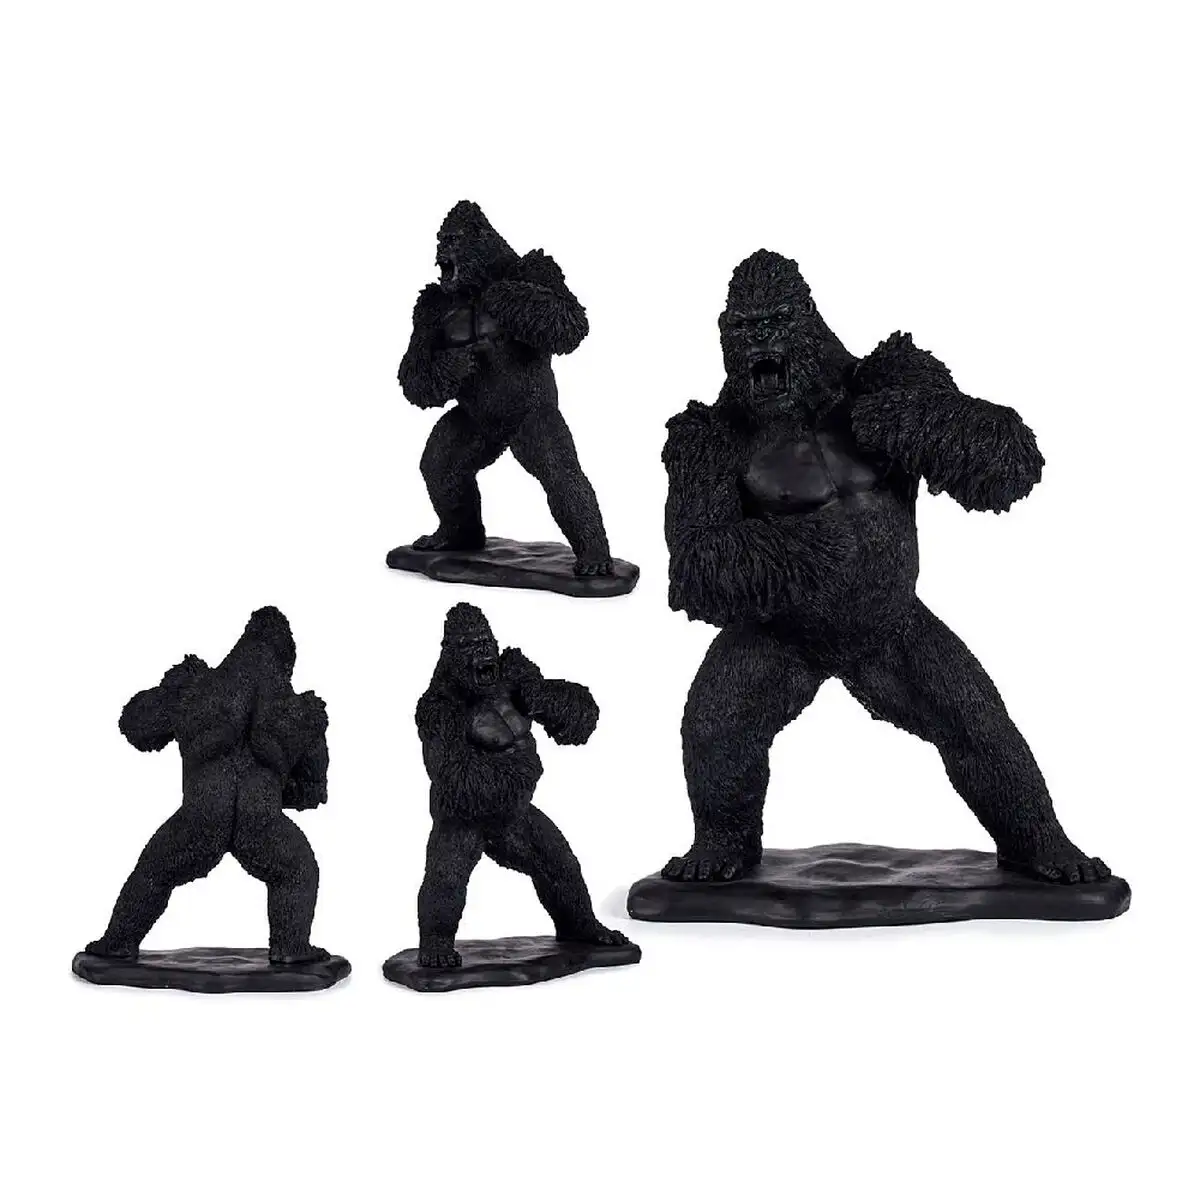 Figurine decorative gorille noir resine 25 5 x 56 5 x 43 5 cm _2586. DIAYTAR SENEGAL - L'Art de Vivre le Shopping Inspiré. Parcourez notre catalogue et choisissez des produits qui reflètent votre passion pour la beauté et l'authenticité.